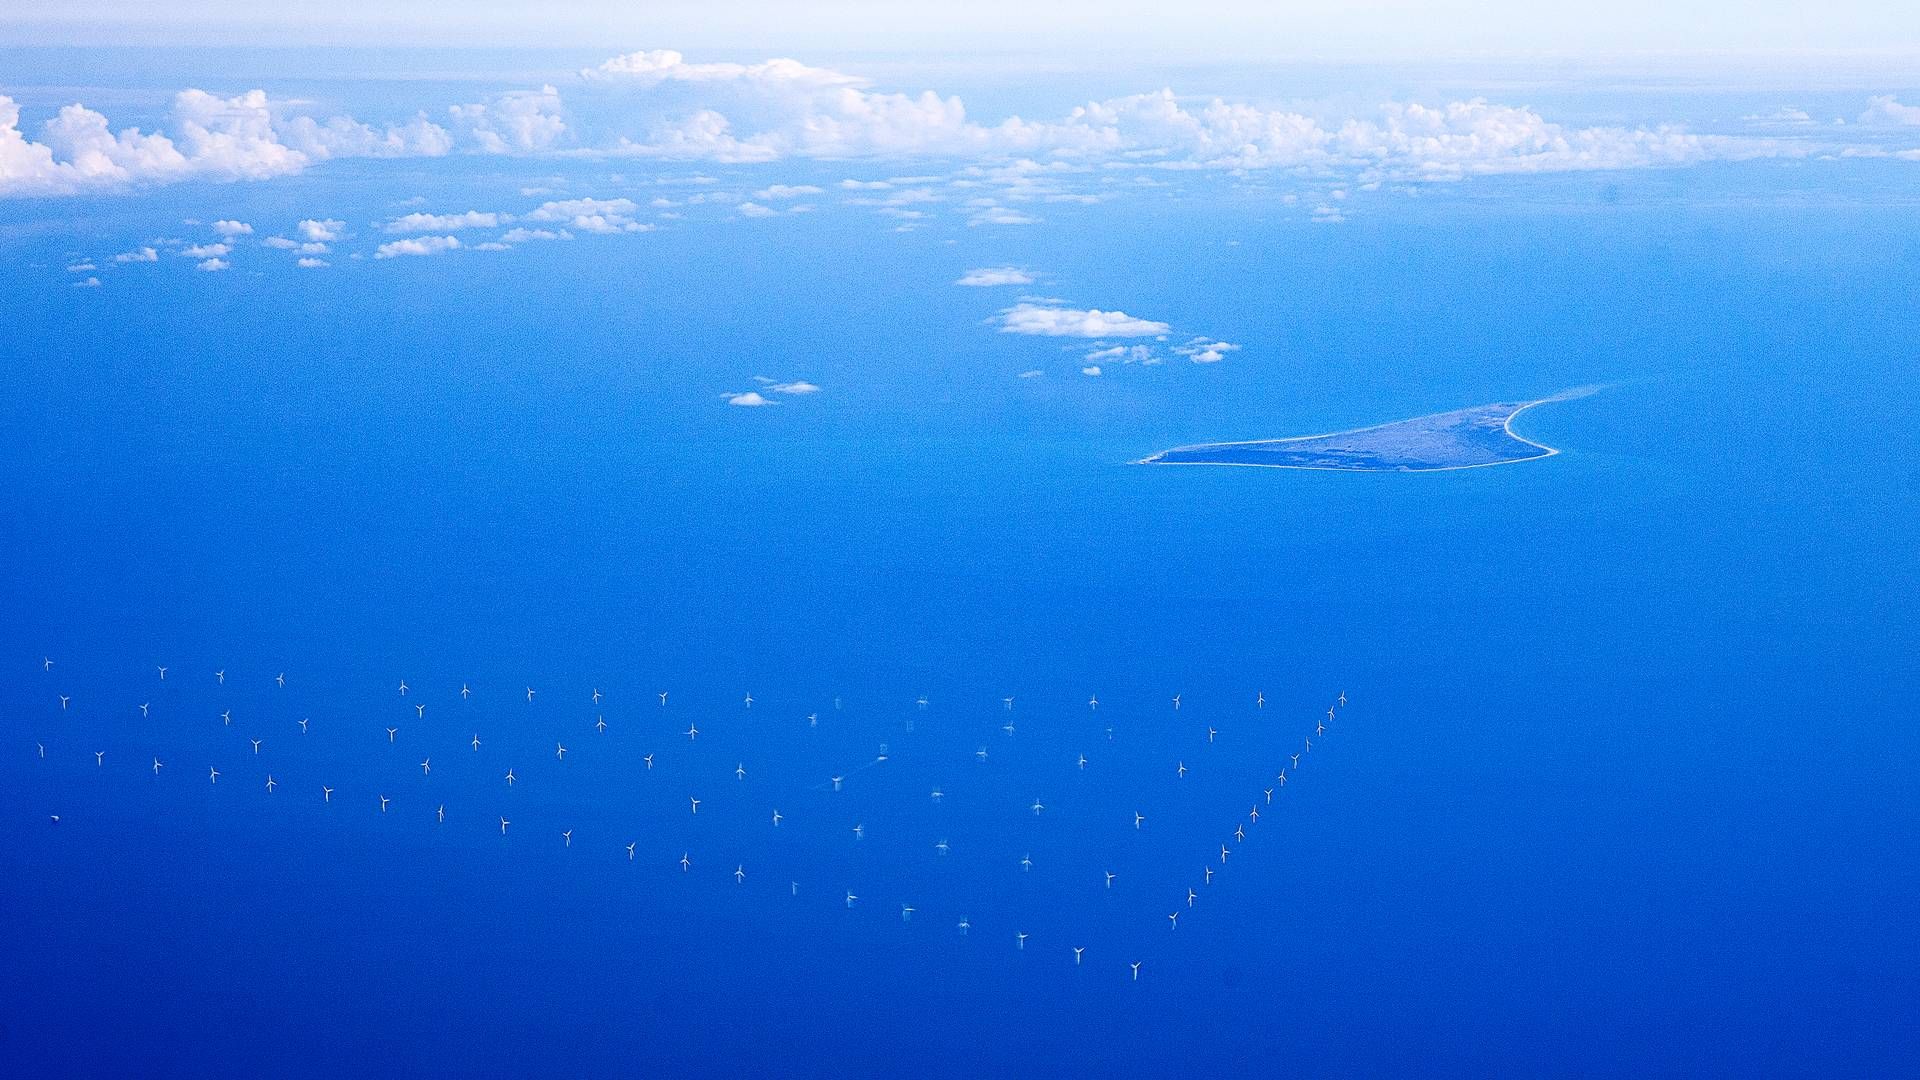 Danmarks kapasitet innen vindkraft til havs skal utvides fra dagens 2,3 GW til inntil 14 GW, ifølge den nye avtalen. | Foto: Finn Frandsen